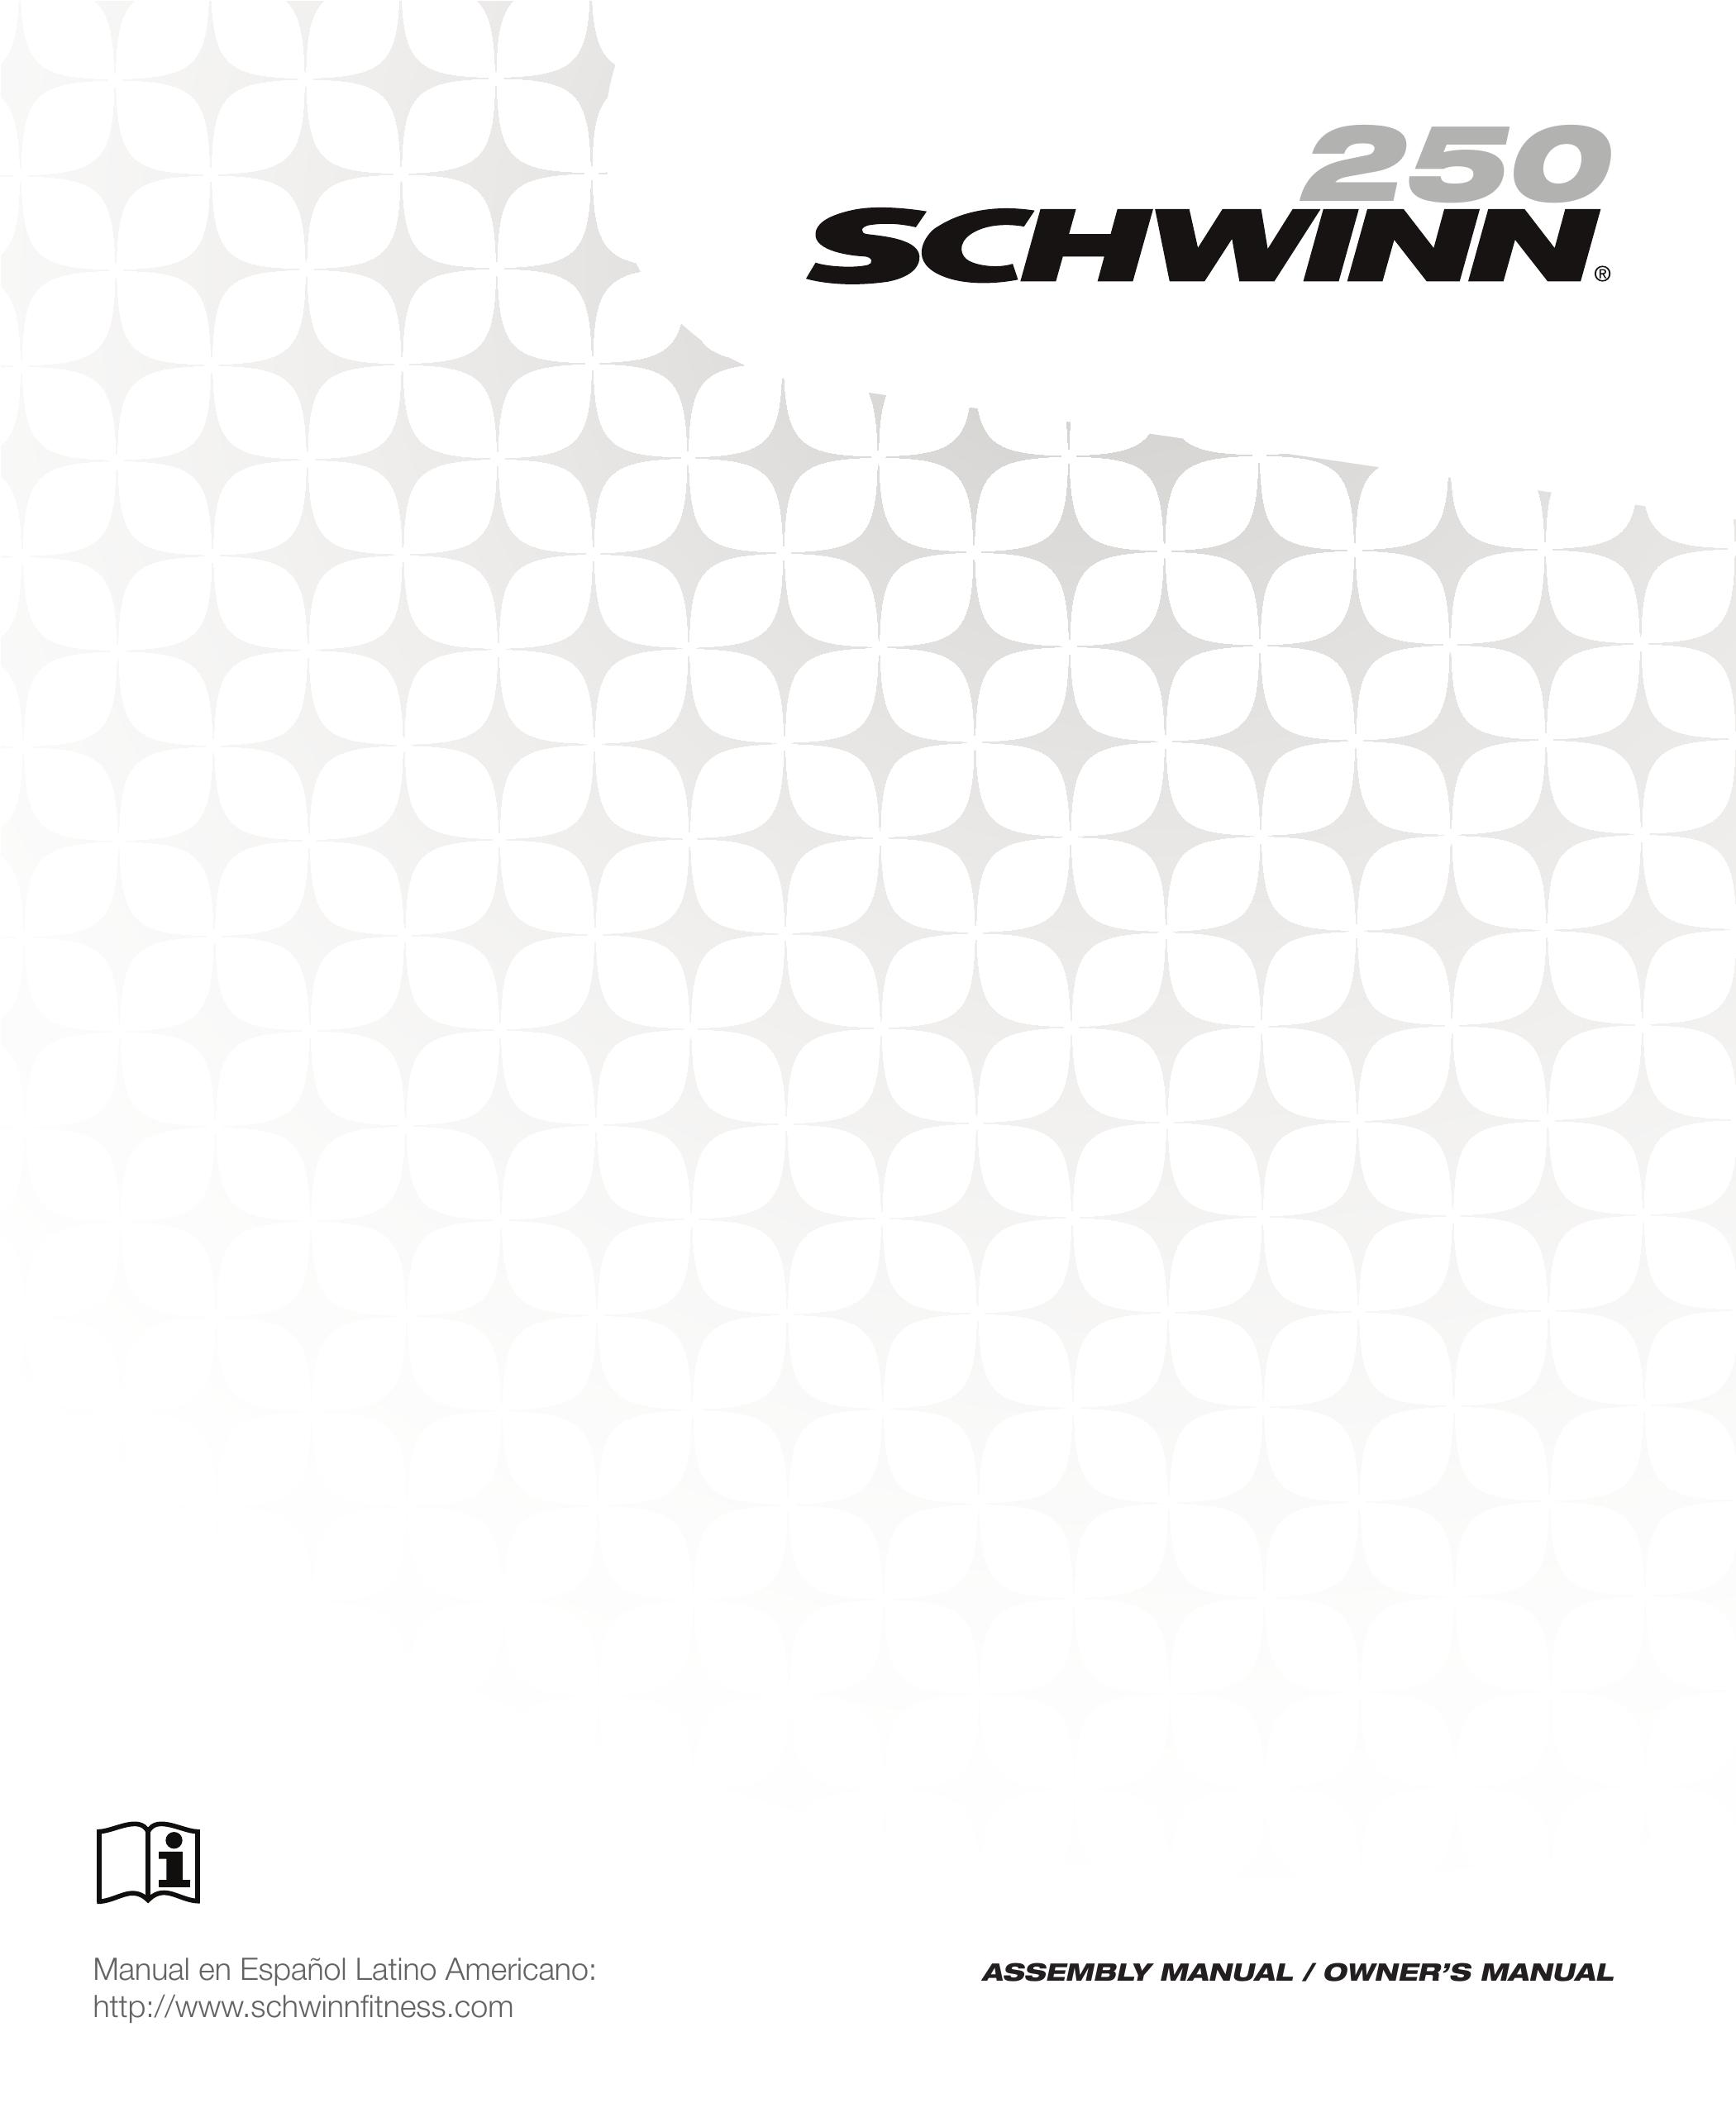 Schwinn 250 schwinn Mobility Scooter User Manual